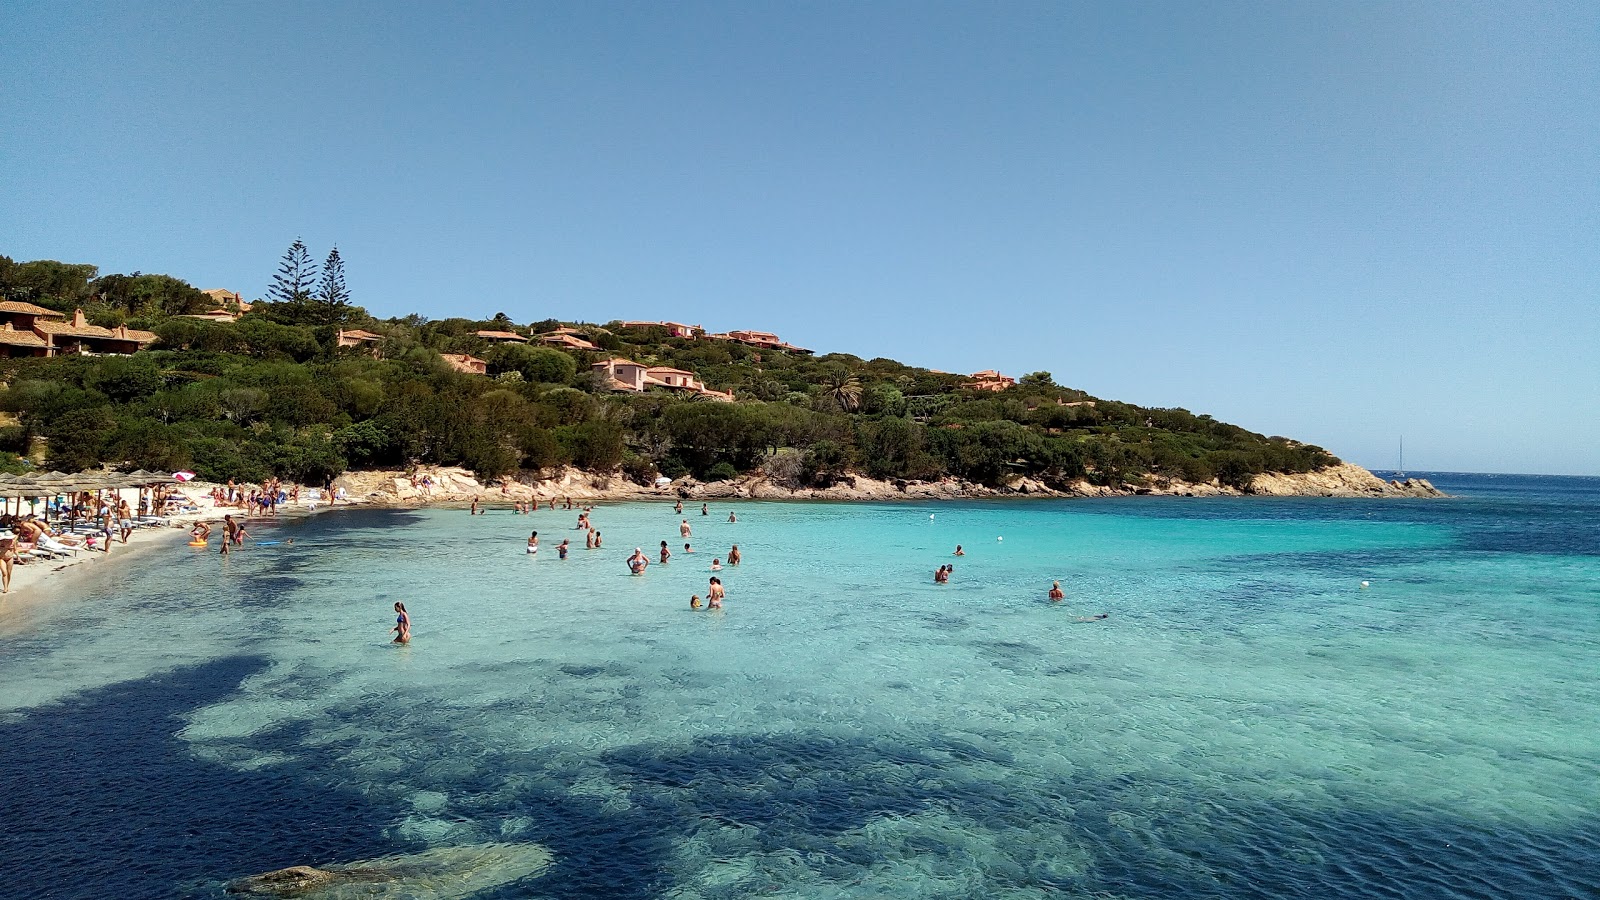 Spiaggia Cala Granu'in fotoğrafı beyaz kum yüzey ile